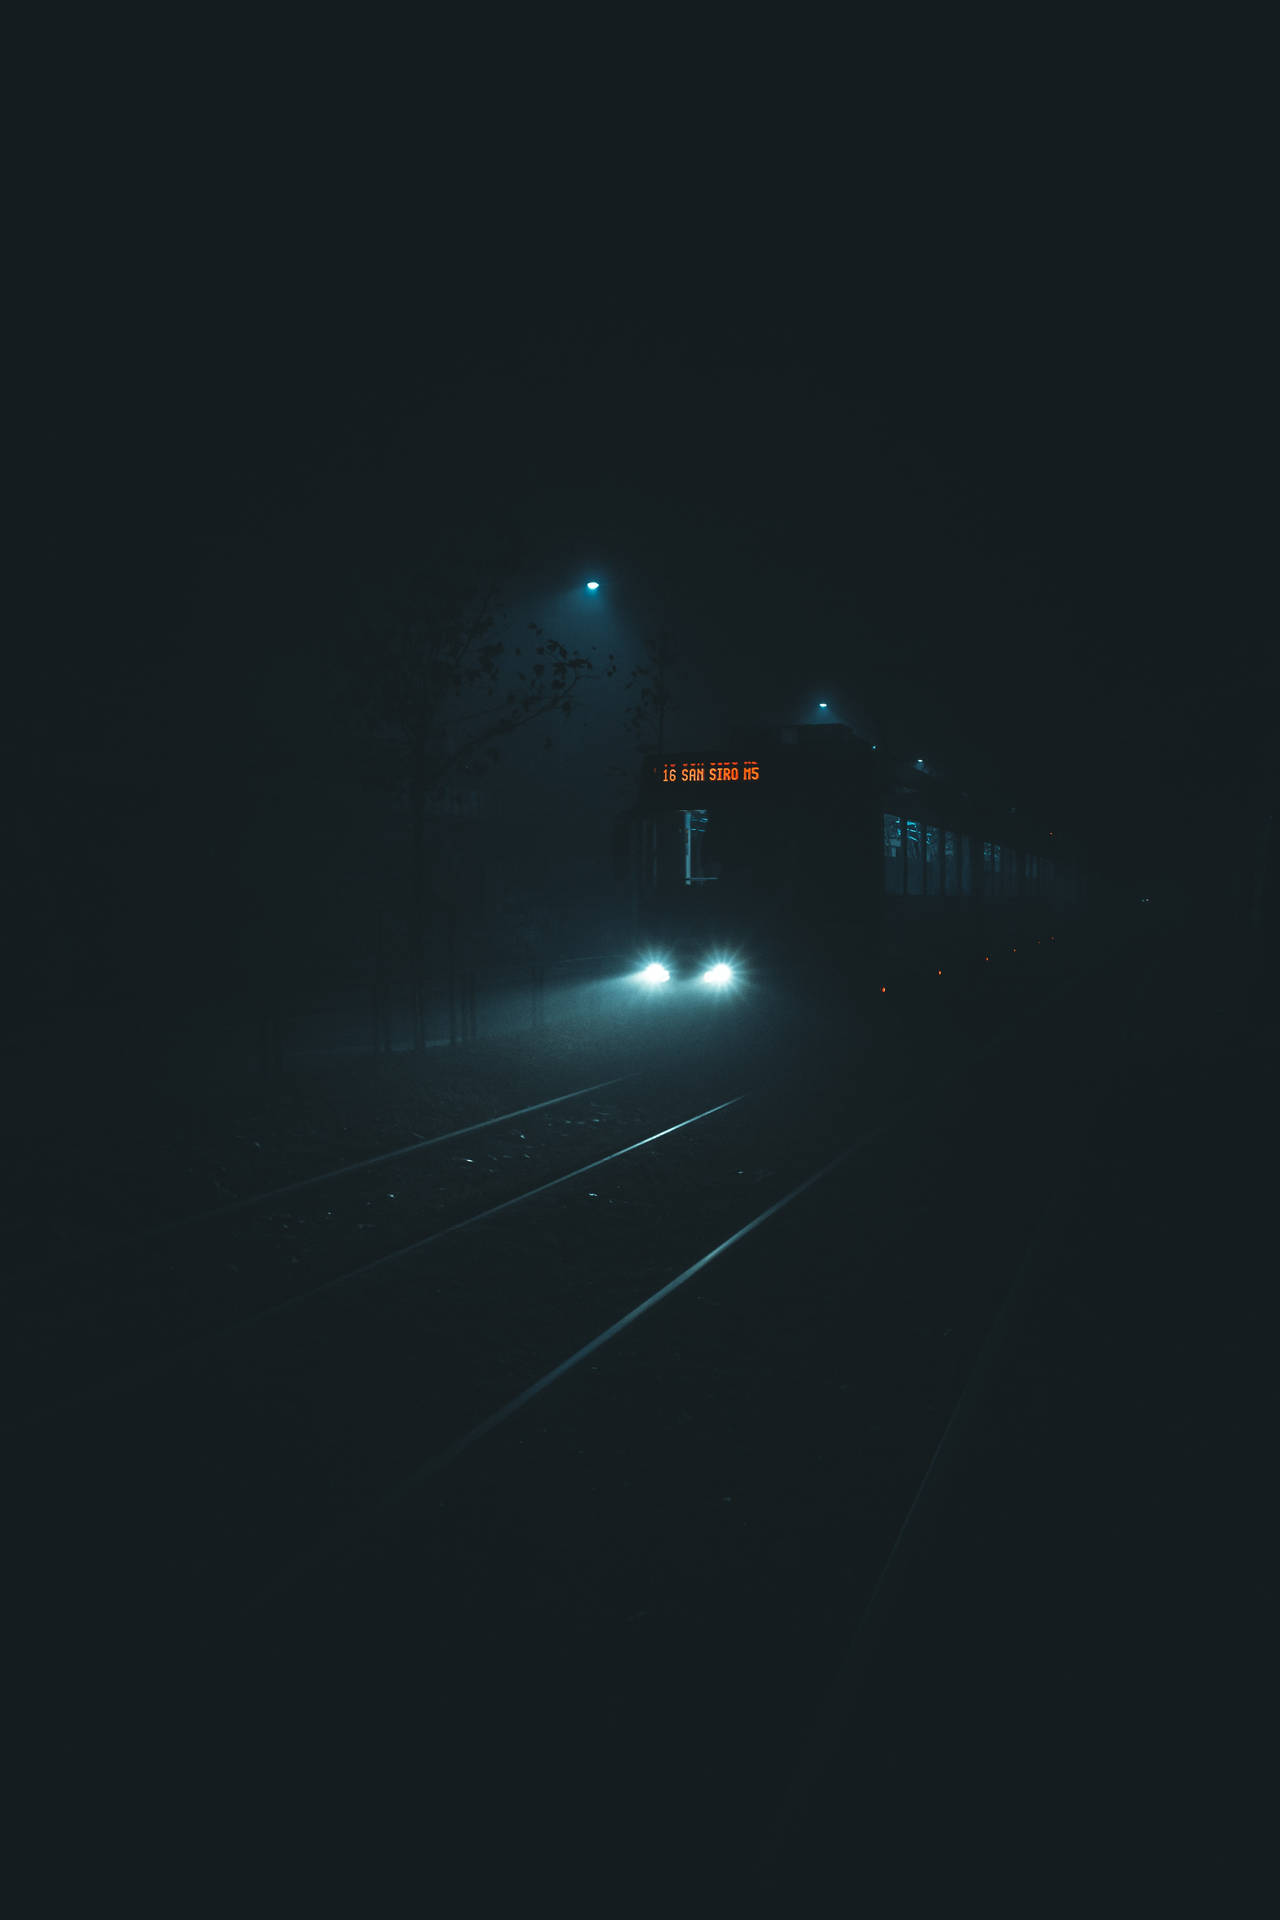 Train In Darkness Background